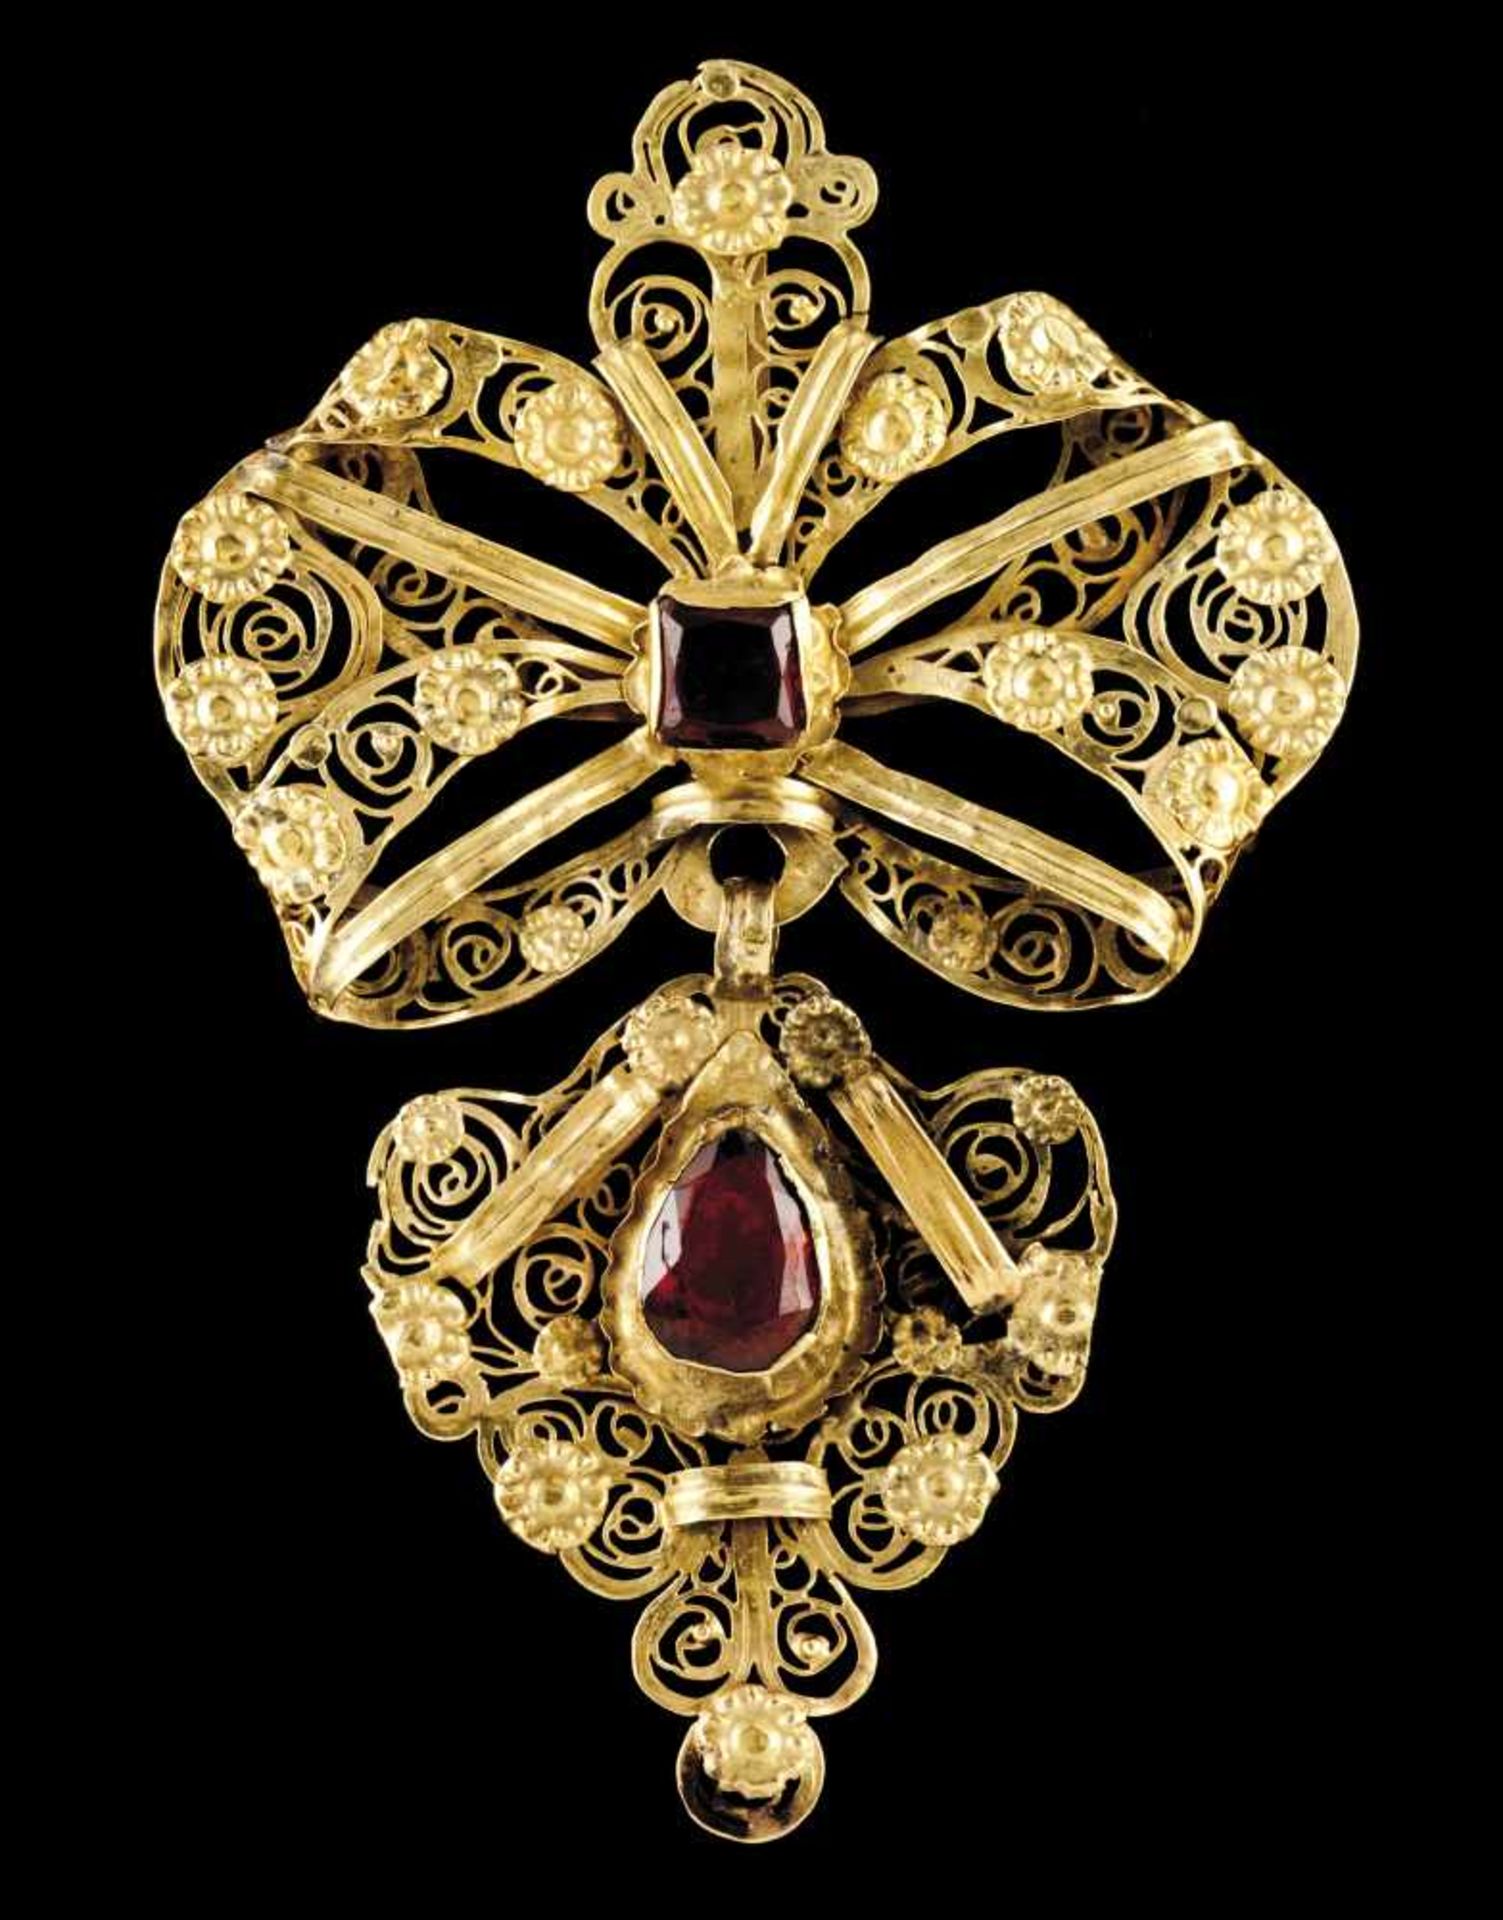 A Baroque pendant